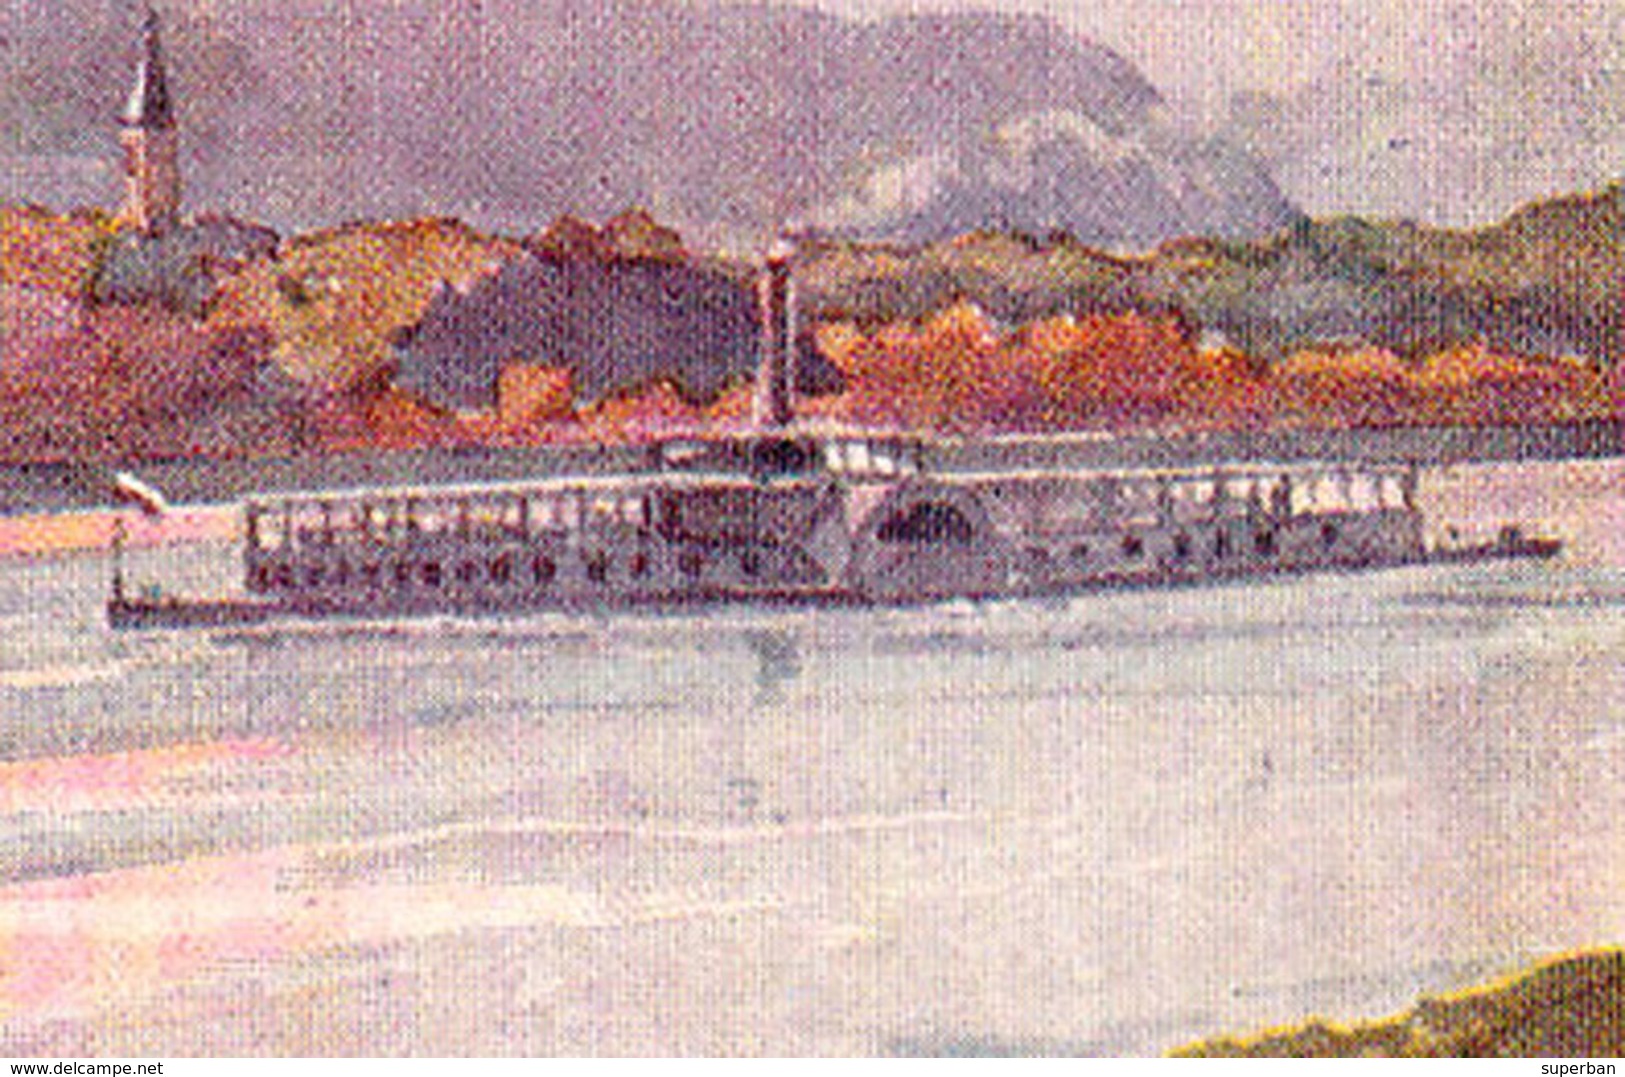 ERSTE K. K. DONAU-DAMPFSCHIFFAHRTS-GESELLSCHAFT / D.D.S.G. - PASSENGER SHIP On DANUBE At KLOSTERNEUBURG ~ 1910 (ae153) - Klosterneuburg